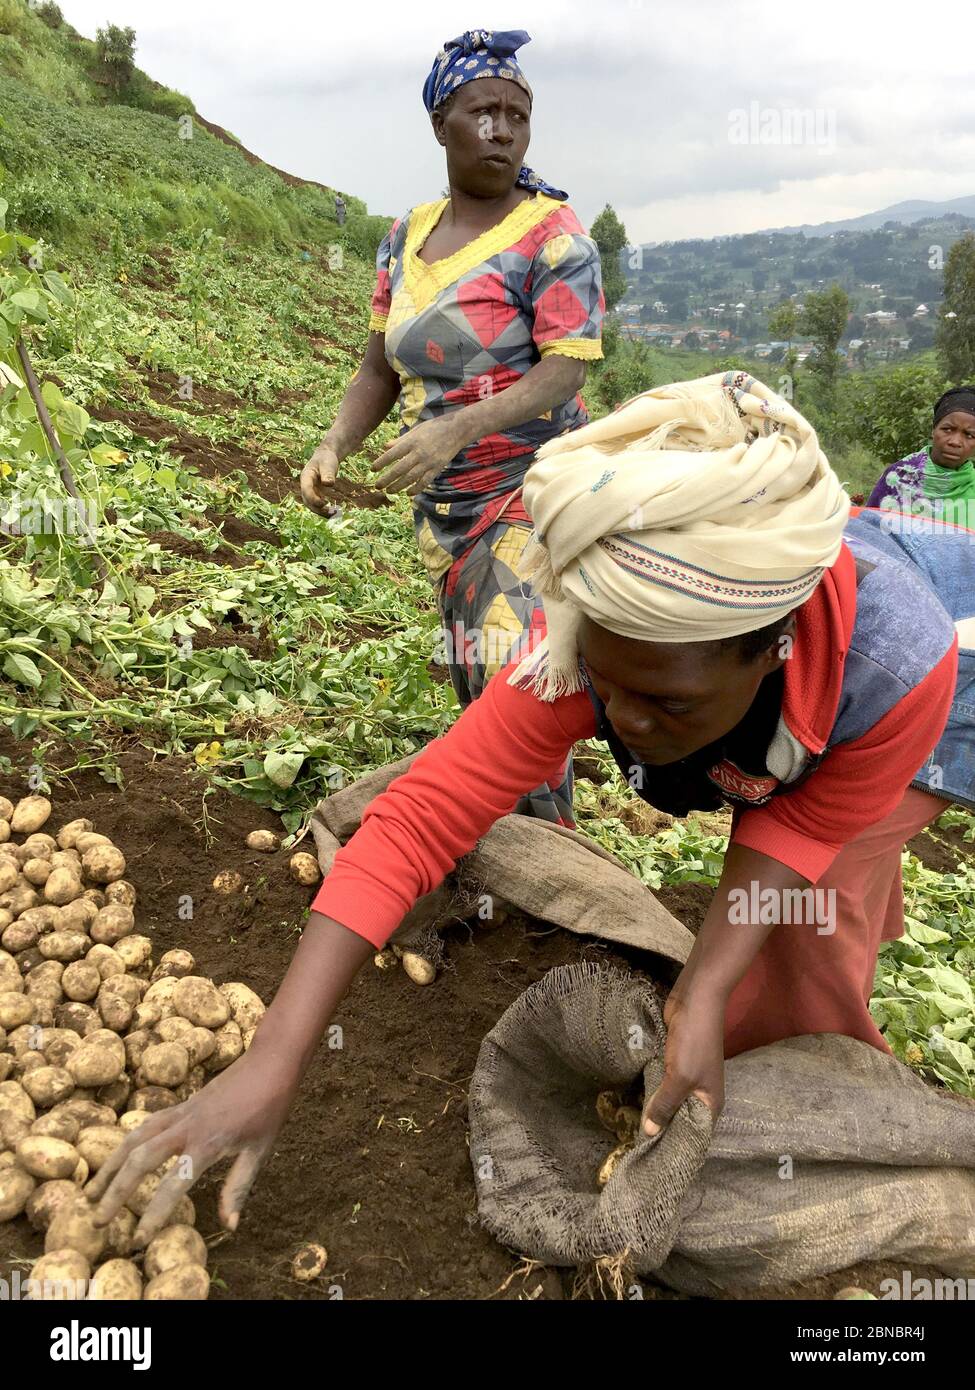 12 juillet 2019 - Kisungu, Rwanda: Agriculteurs de subsistance en Afrique centrale, Rwanda, récolte de pommes de terre Banque D'Images